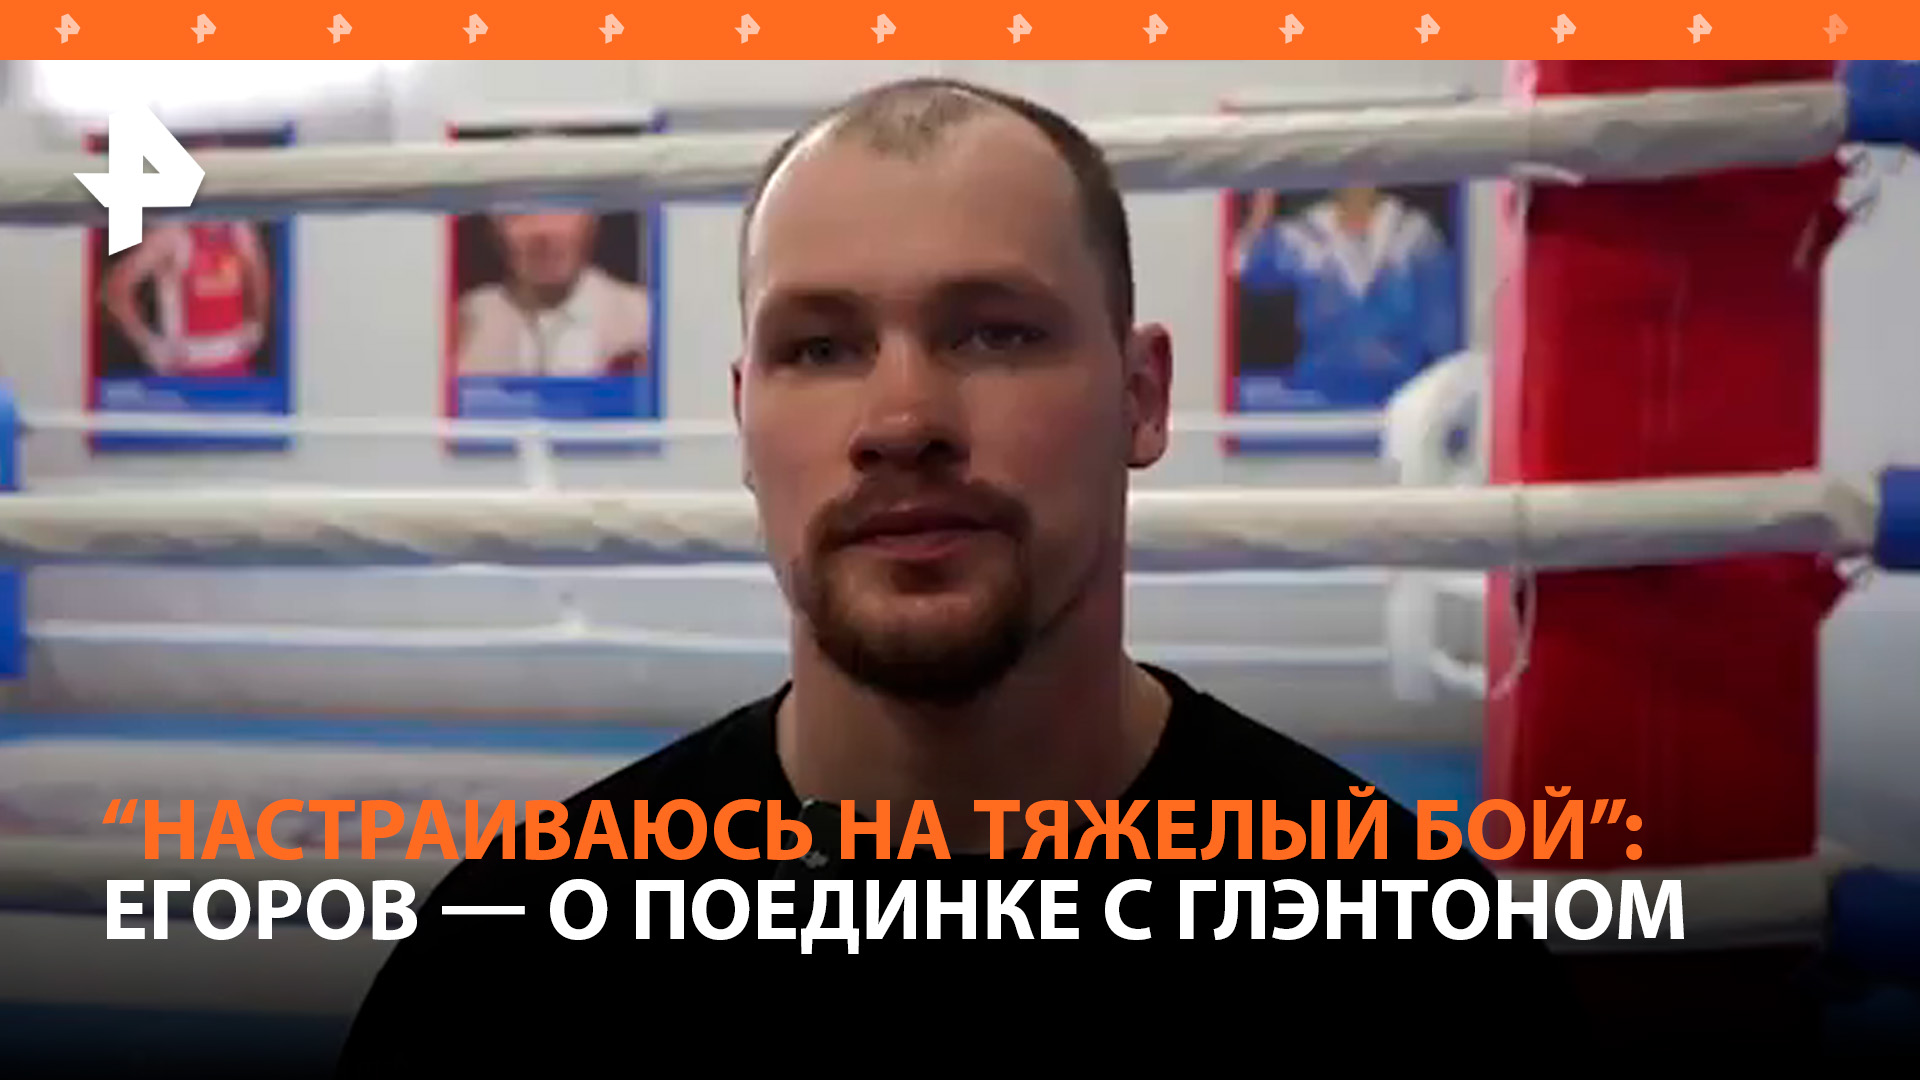 "Настраиваюсь на тяжелый бой!": боксер Егоров — о предстоящем поединке с американцем Глэнтоном